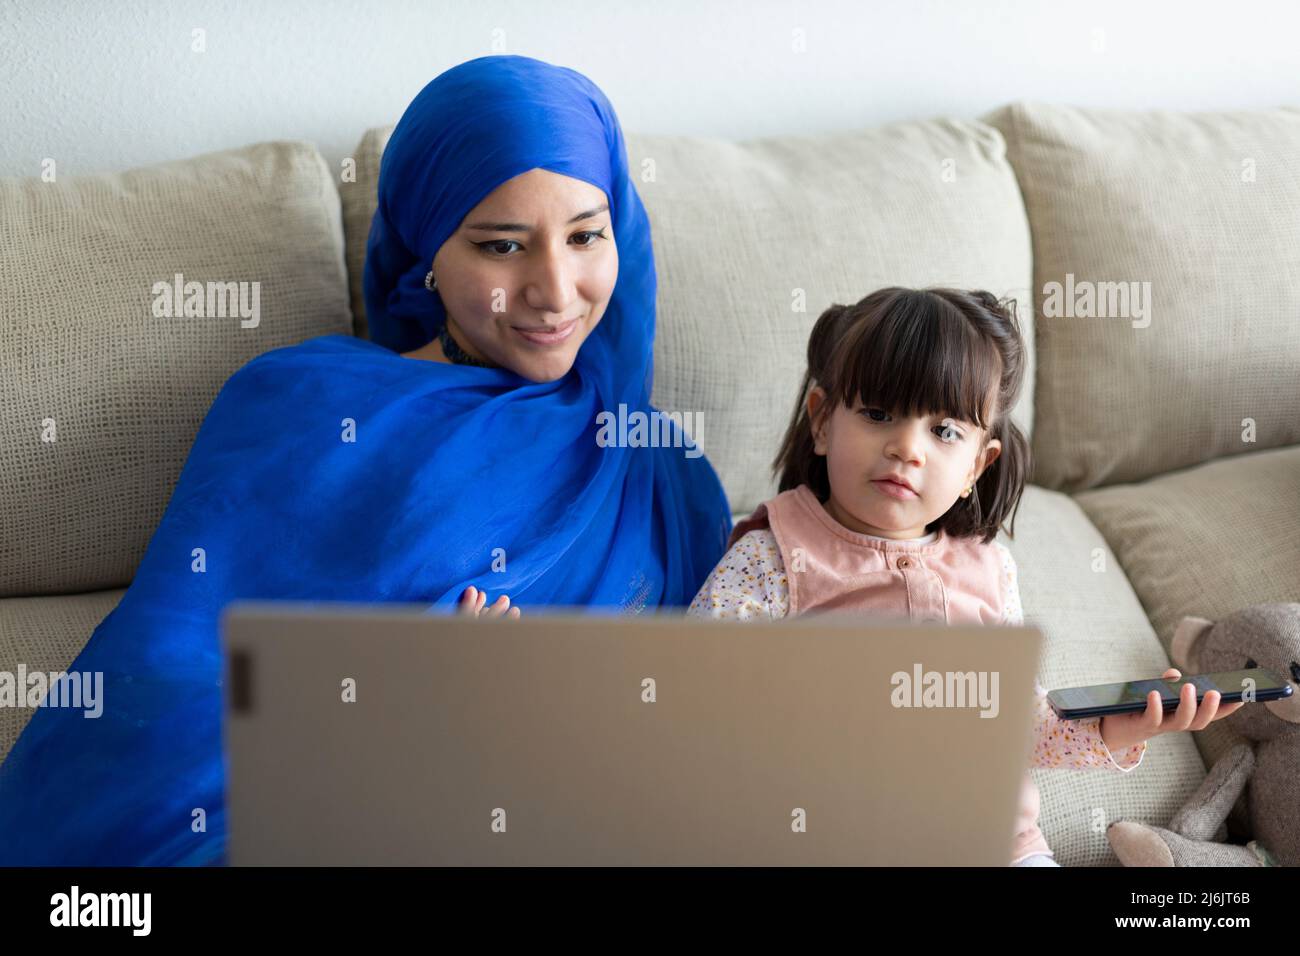 Junge alleinerziehende muslimische Mutter mit ihrer jungen Tochter, die zu Hause einen Laptop benutzt. Videoanruf tätigen, Online-Unterhaltung, Zeichentrickfilme zusammen ansehen und hav Stockfoto